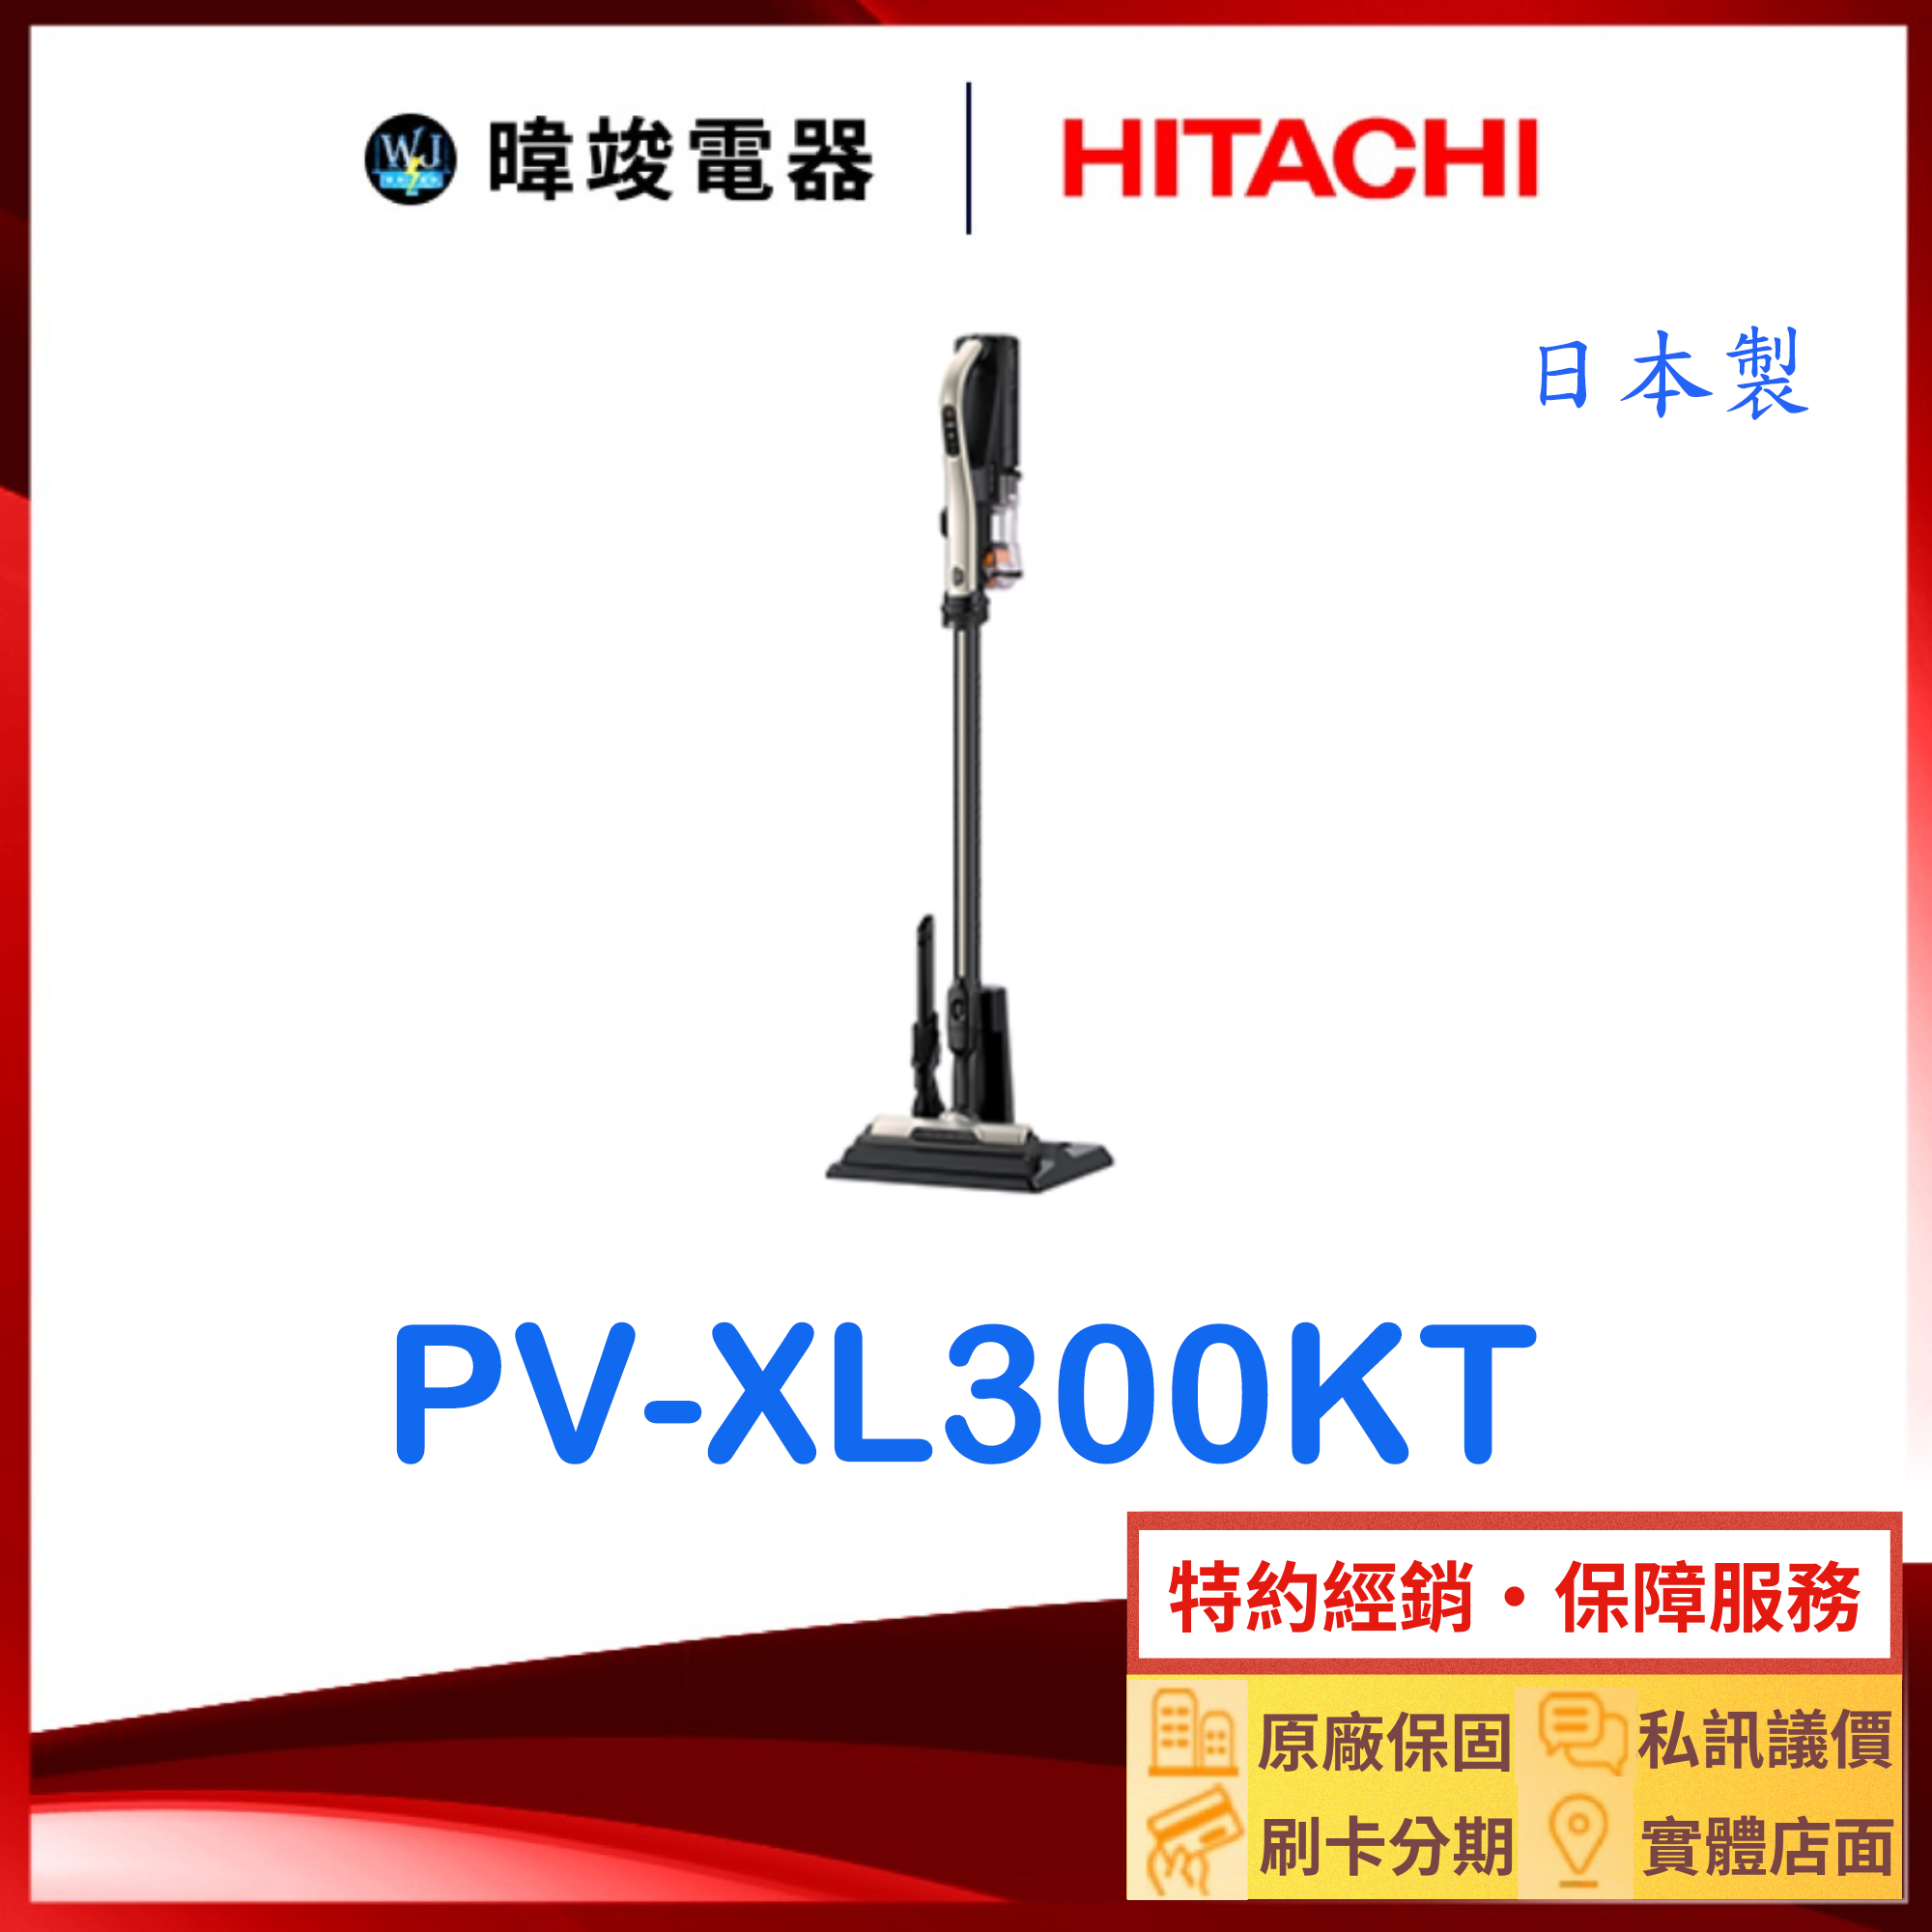 現貨【獨家折扣碼】HITACHI 日立 PV-XL300KT 直立式 吸塵器 PVXL300KT 日本製 無線吸塵器